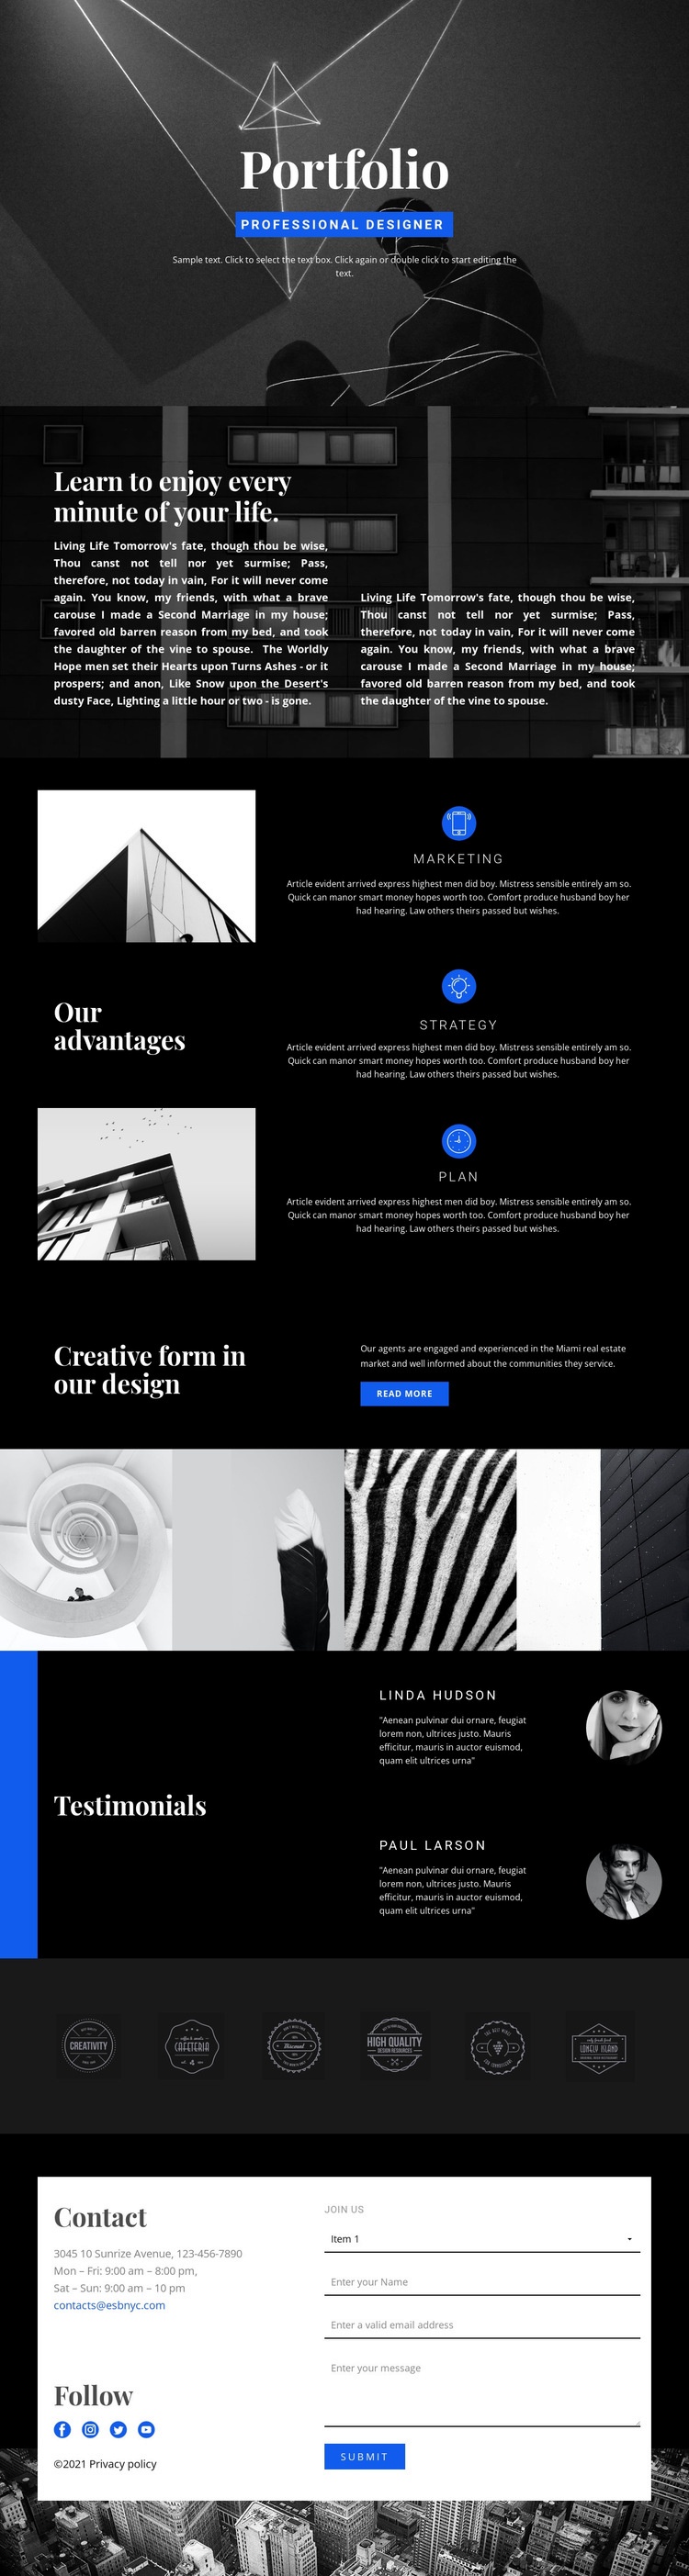 Fashion Designer Portfolio Web Page Design